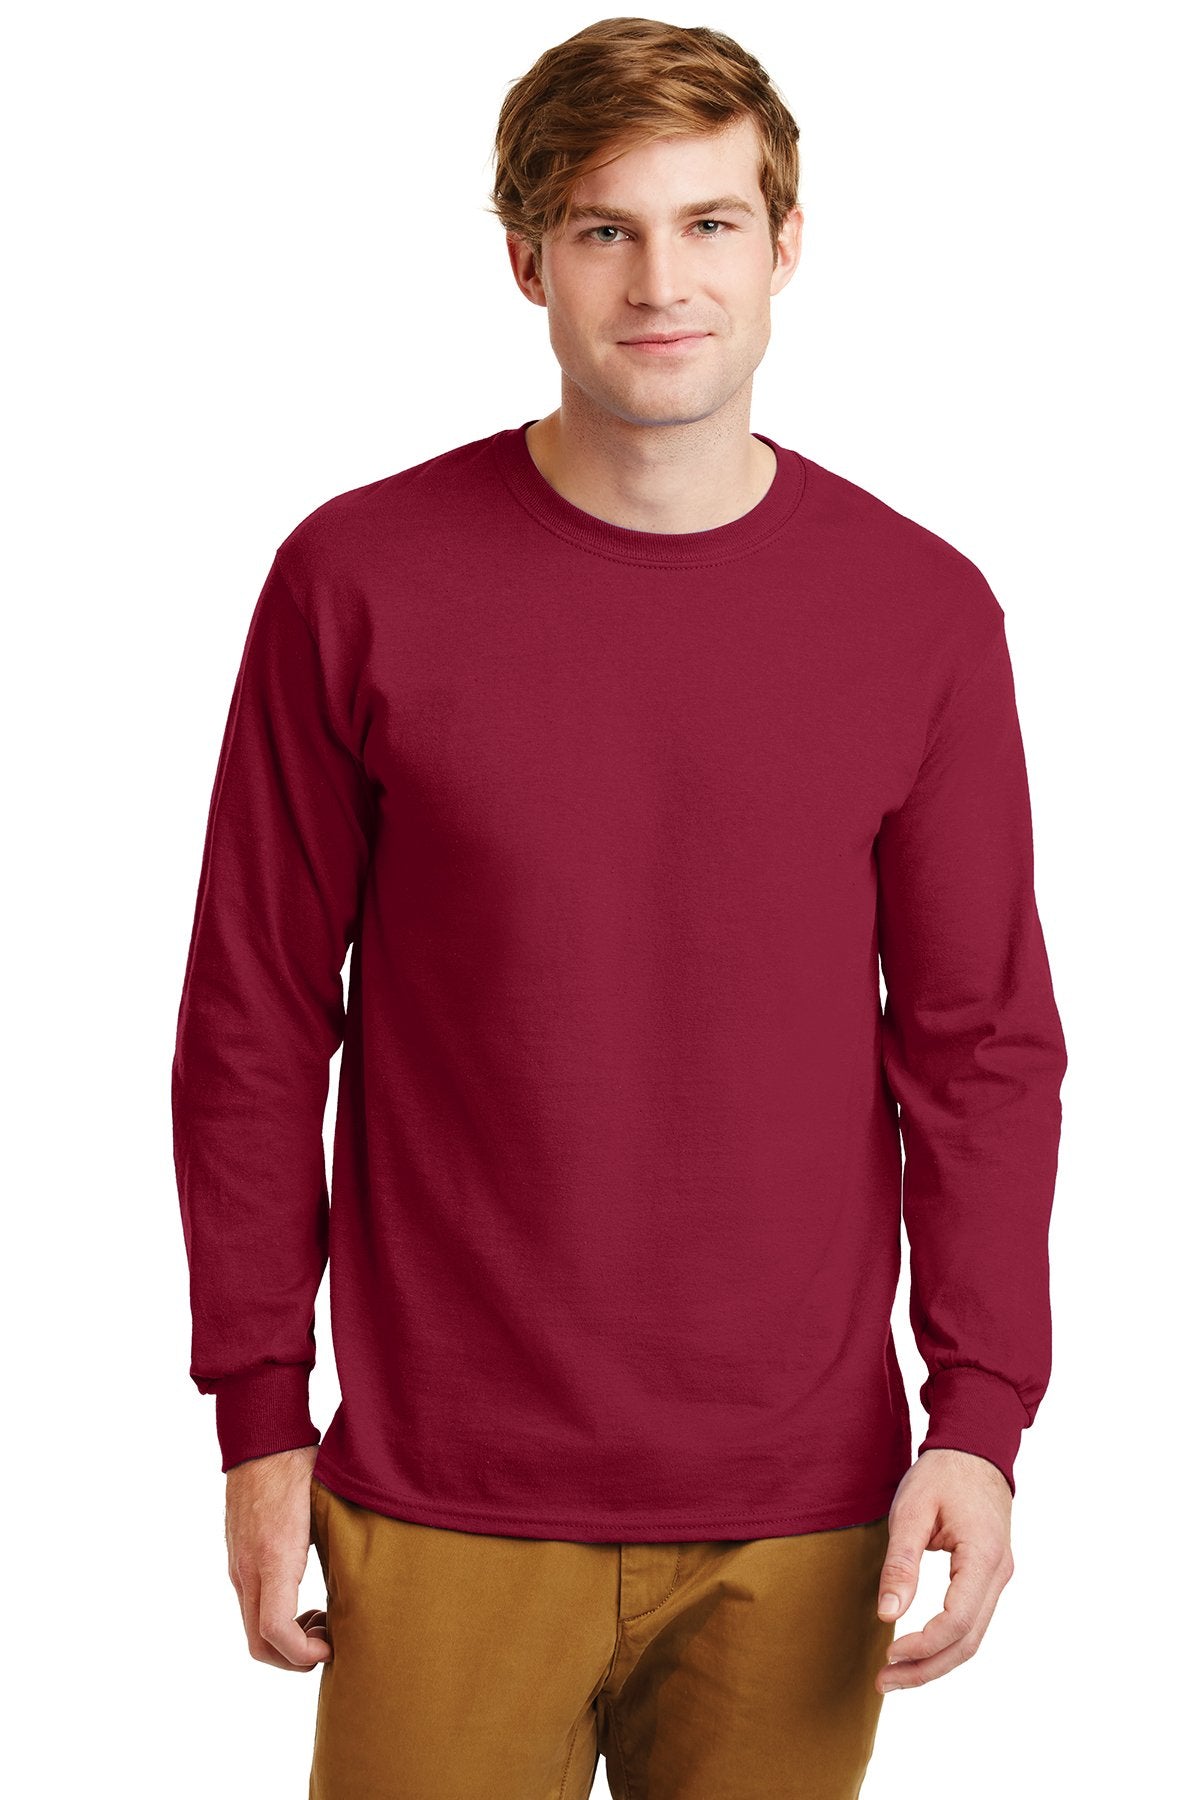 Gildan Ultra Cotton Long Sleeve T-Shirt